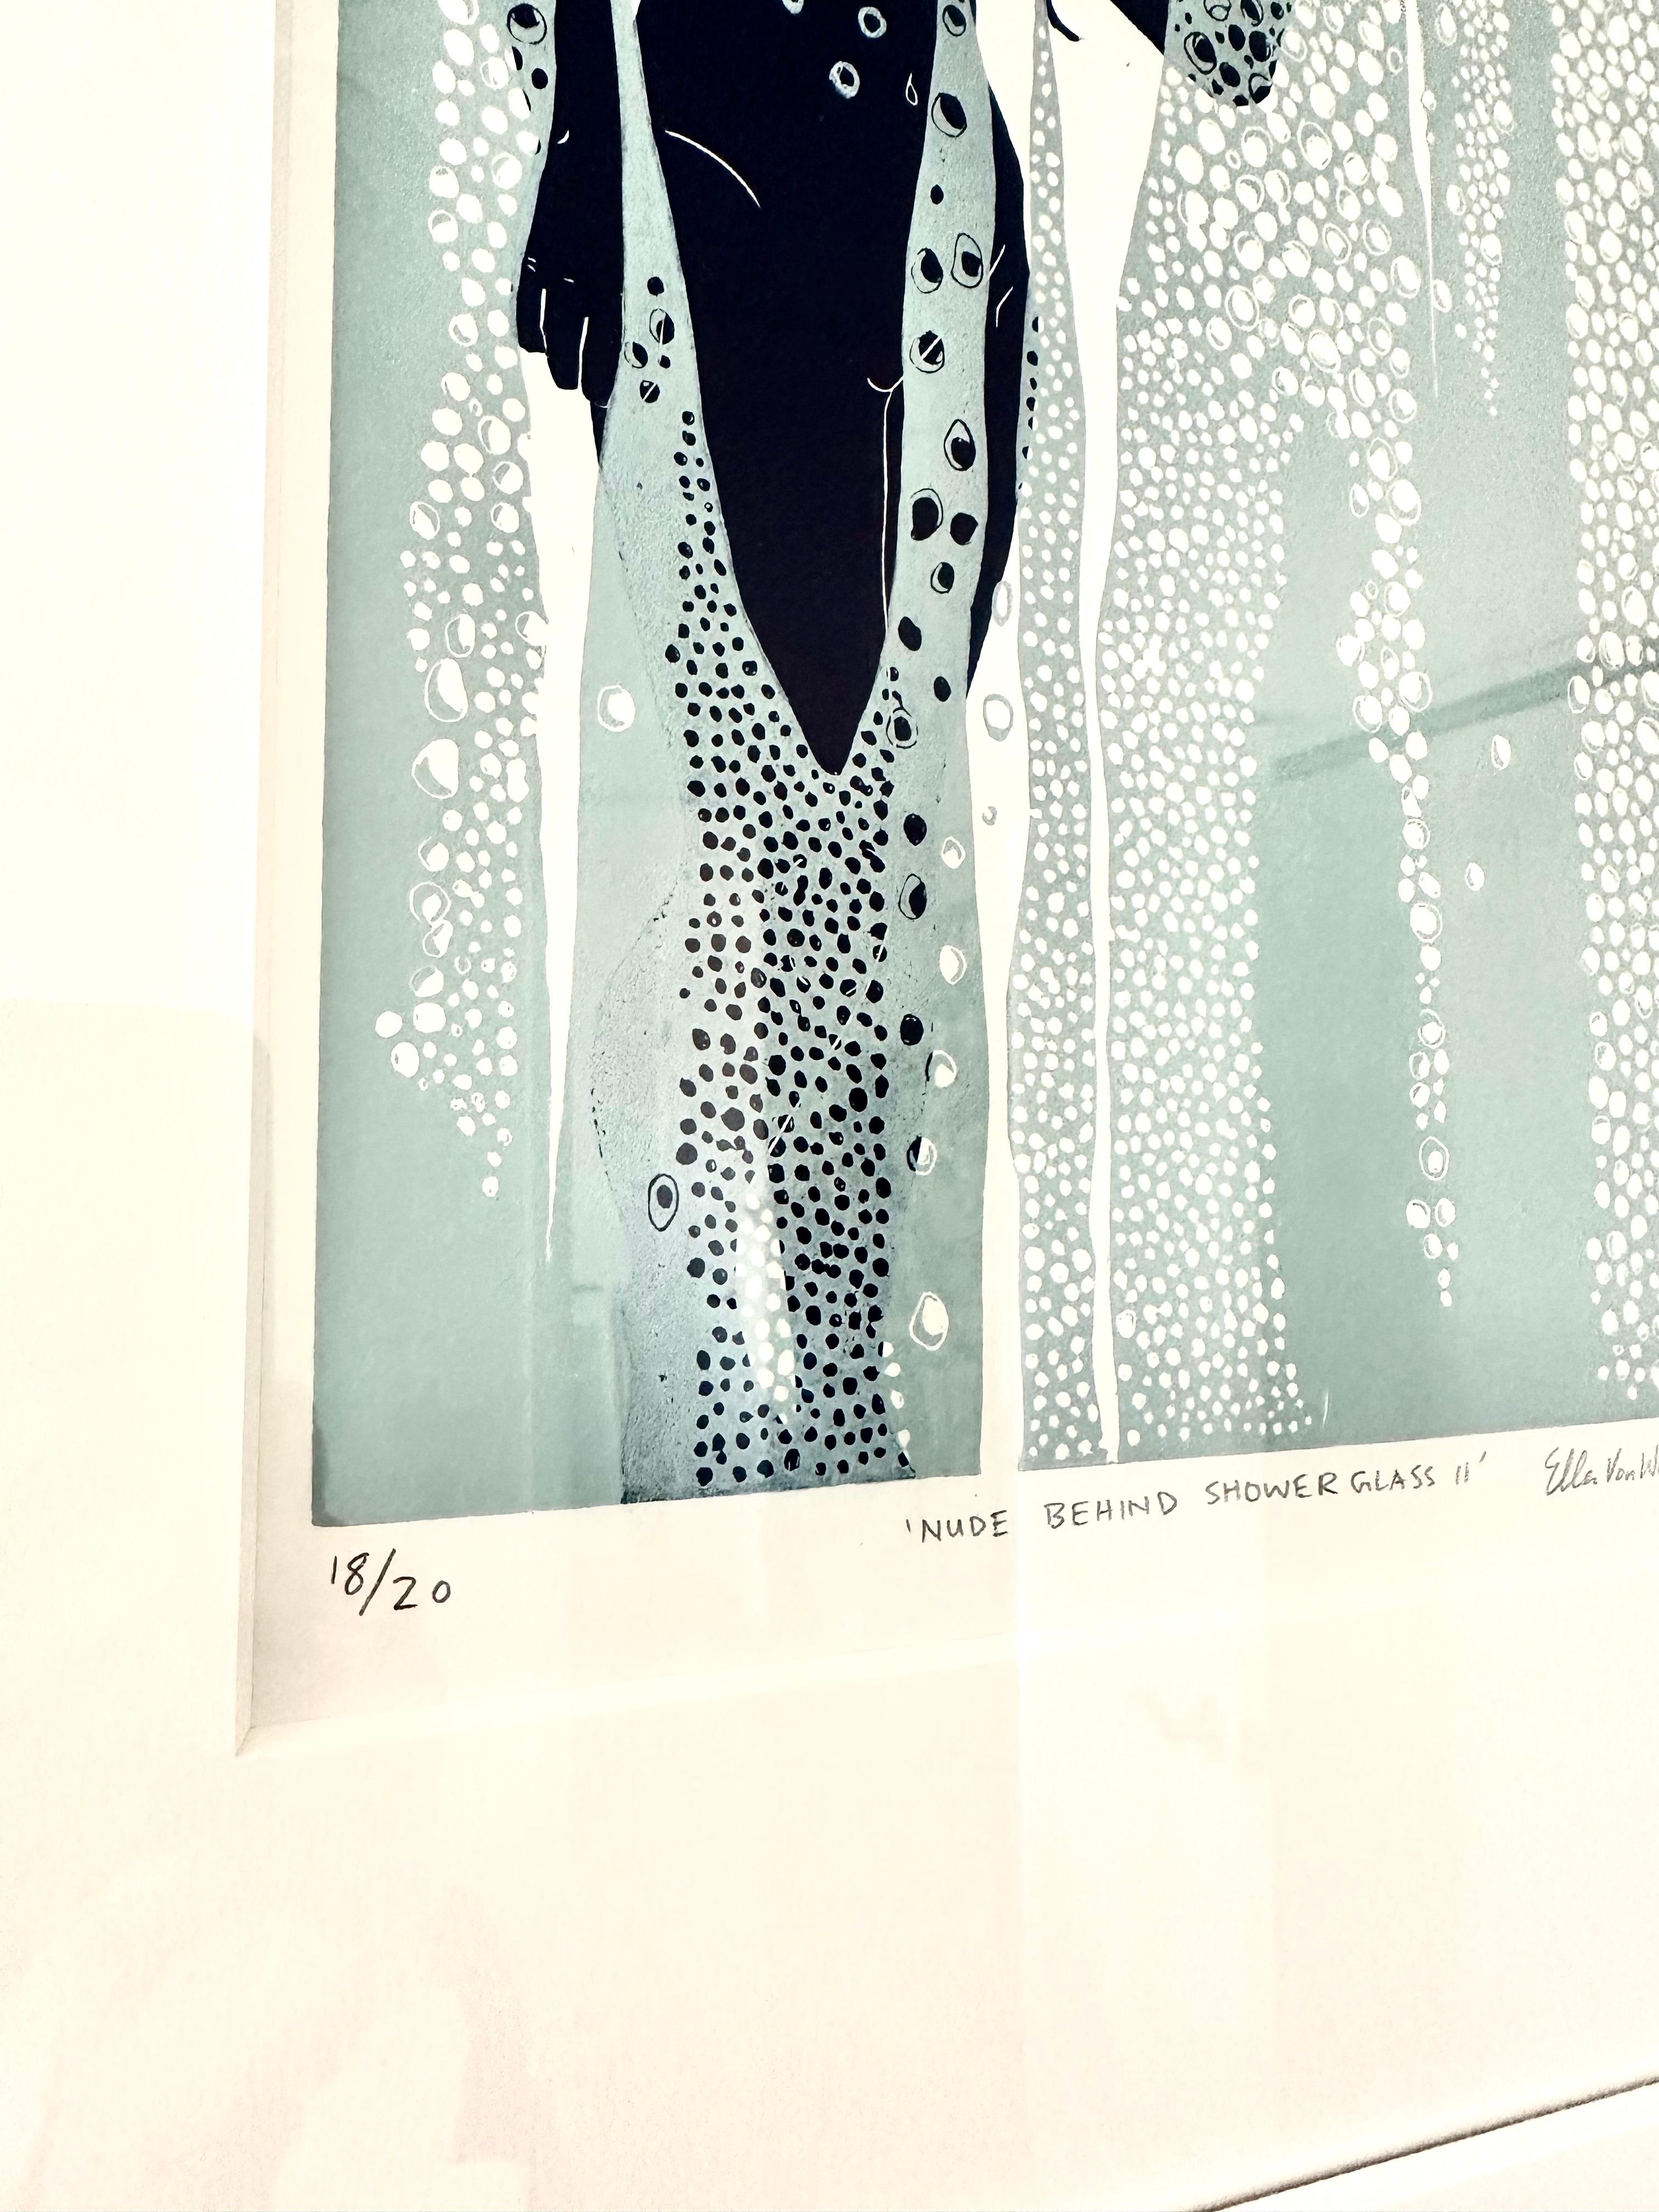 Akt hinter dem Schaufensterglas II, weiblicher figurativer Originaldruck im Linoschliff, gerahmt – Print von Ellen Von Wiegand